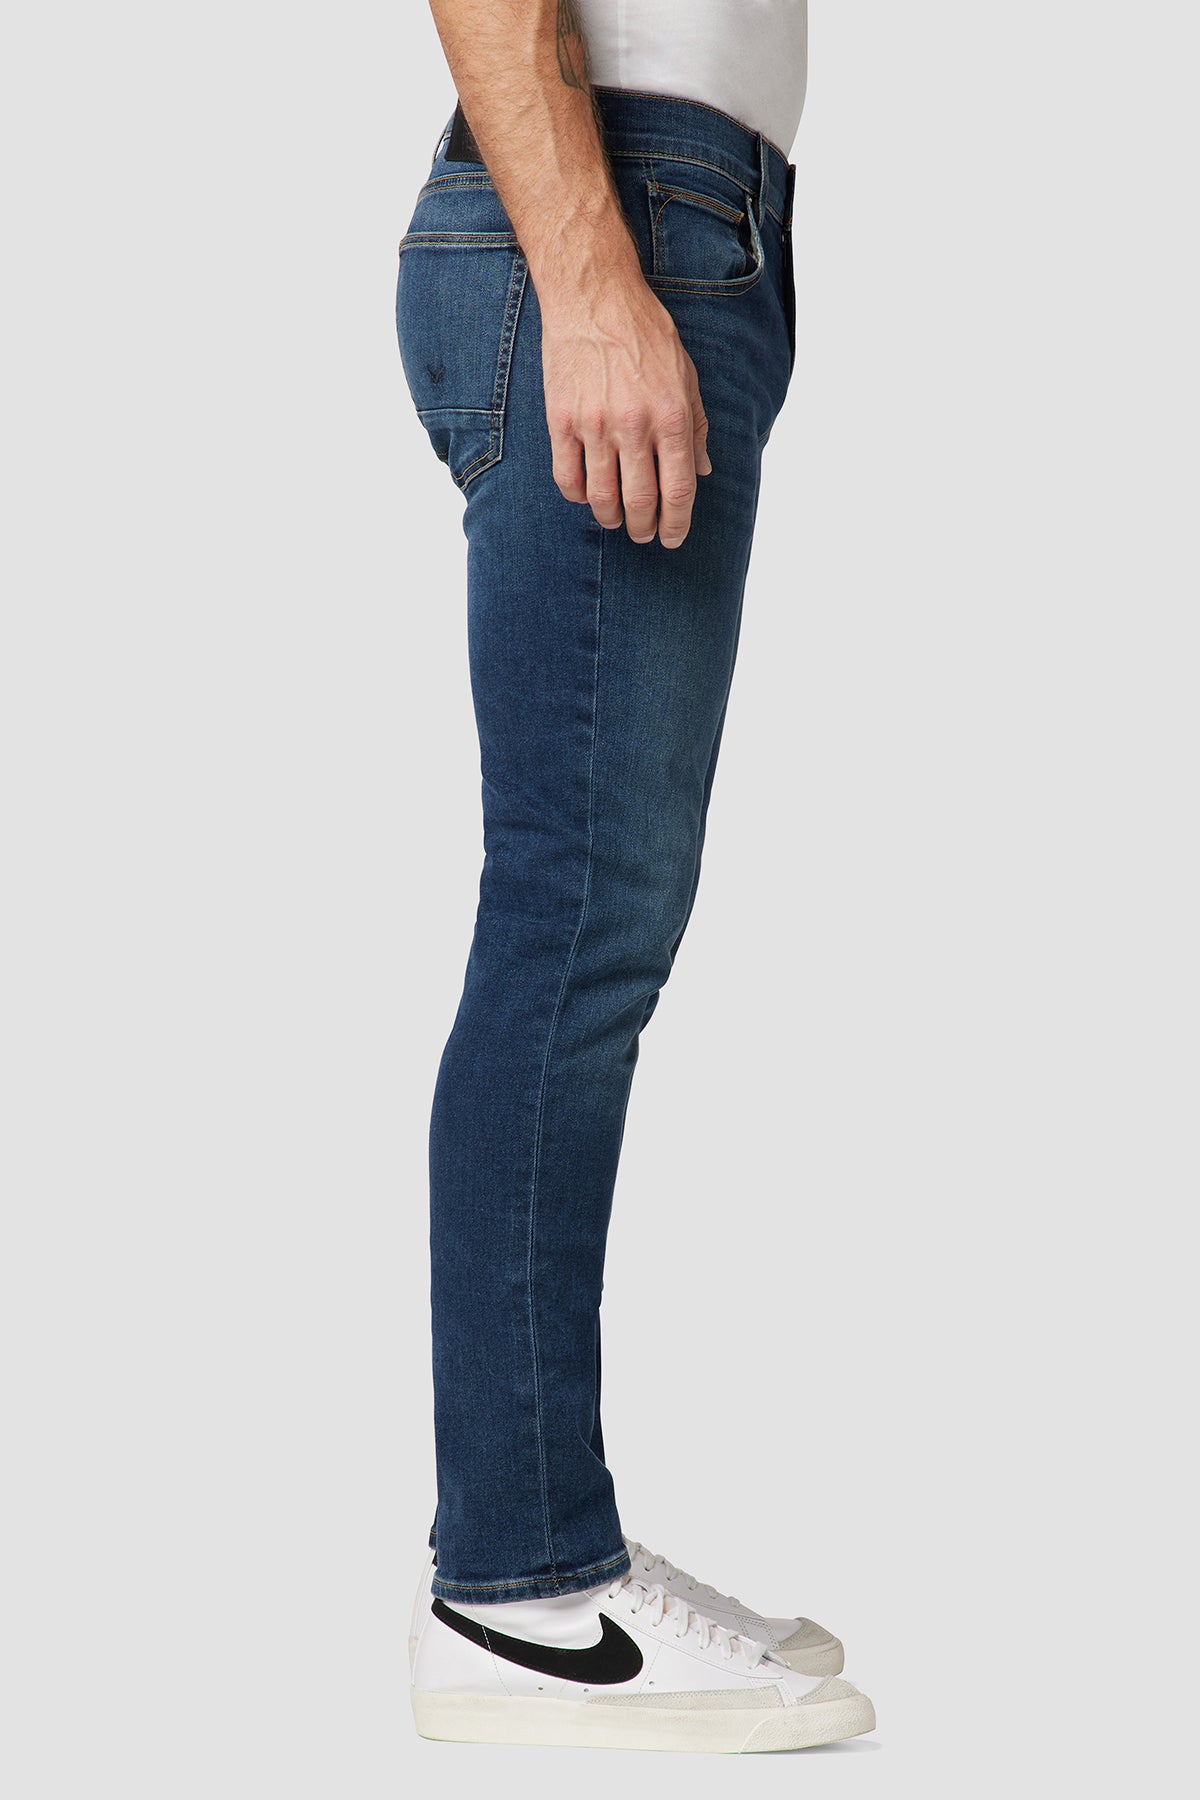 Slim Straight Jean 36" Inseam | Premium